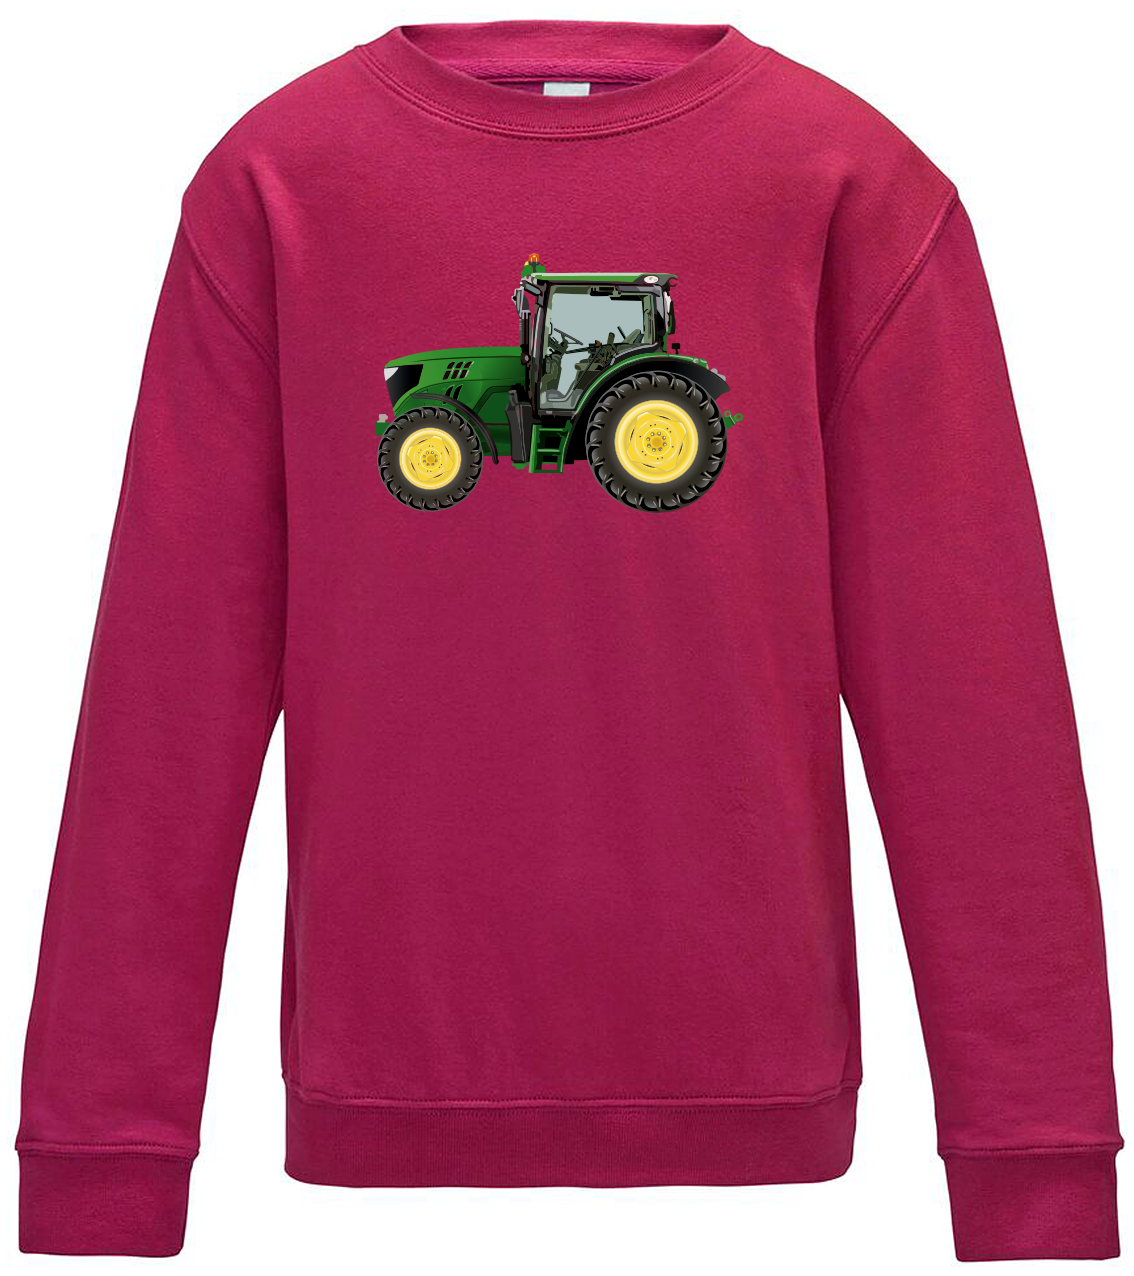 Dětská mikina s traktorem - Zelený traktor Velikost: 5/6 (110/116), Barva: Růžová